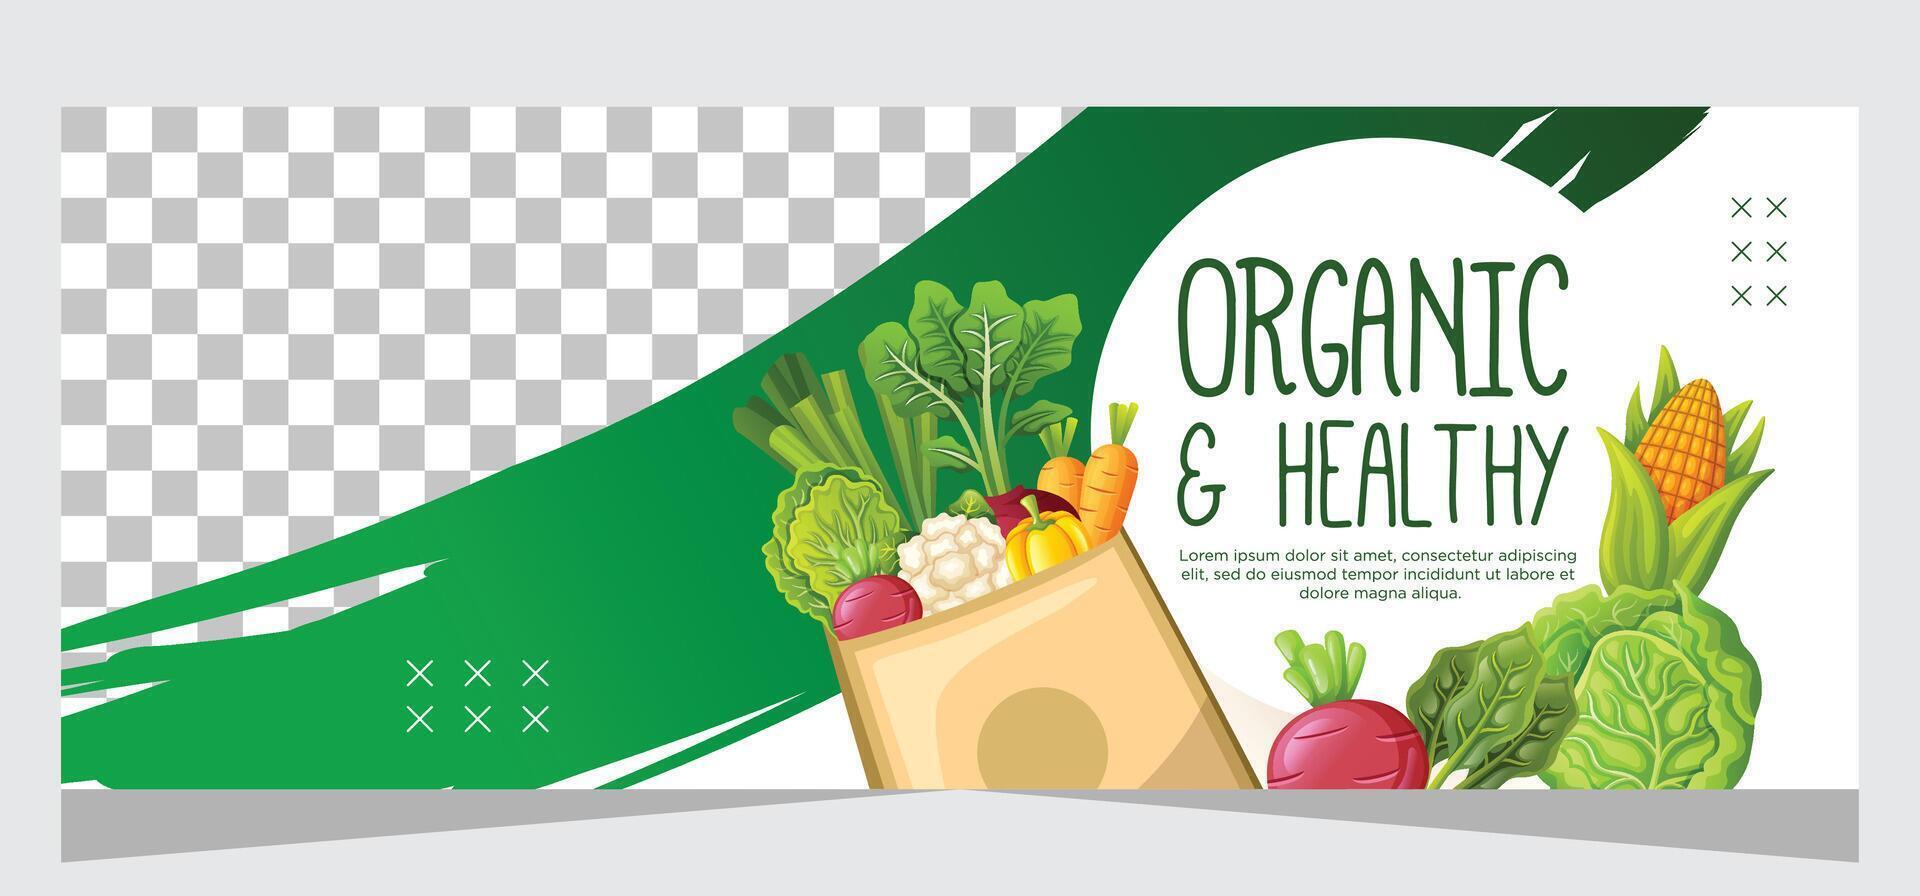 organisch und gesund Essen Banner Vorlage Design vektor